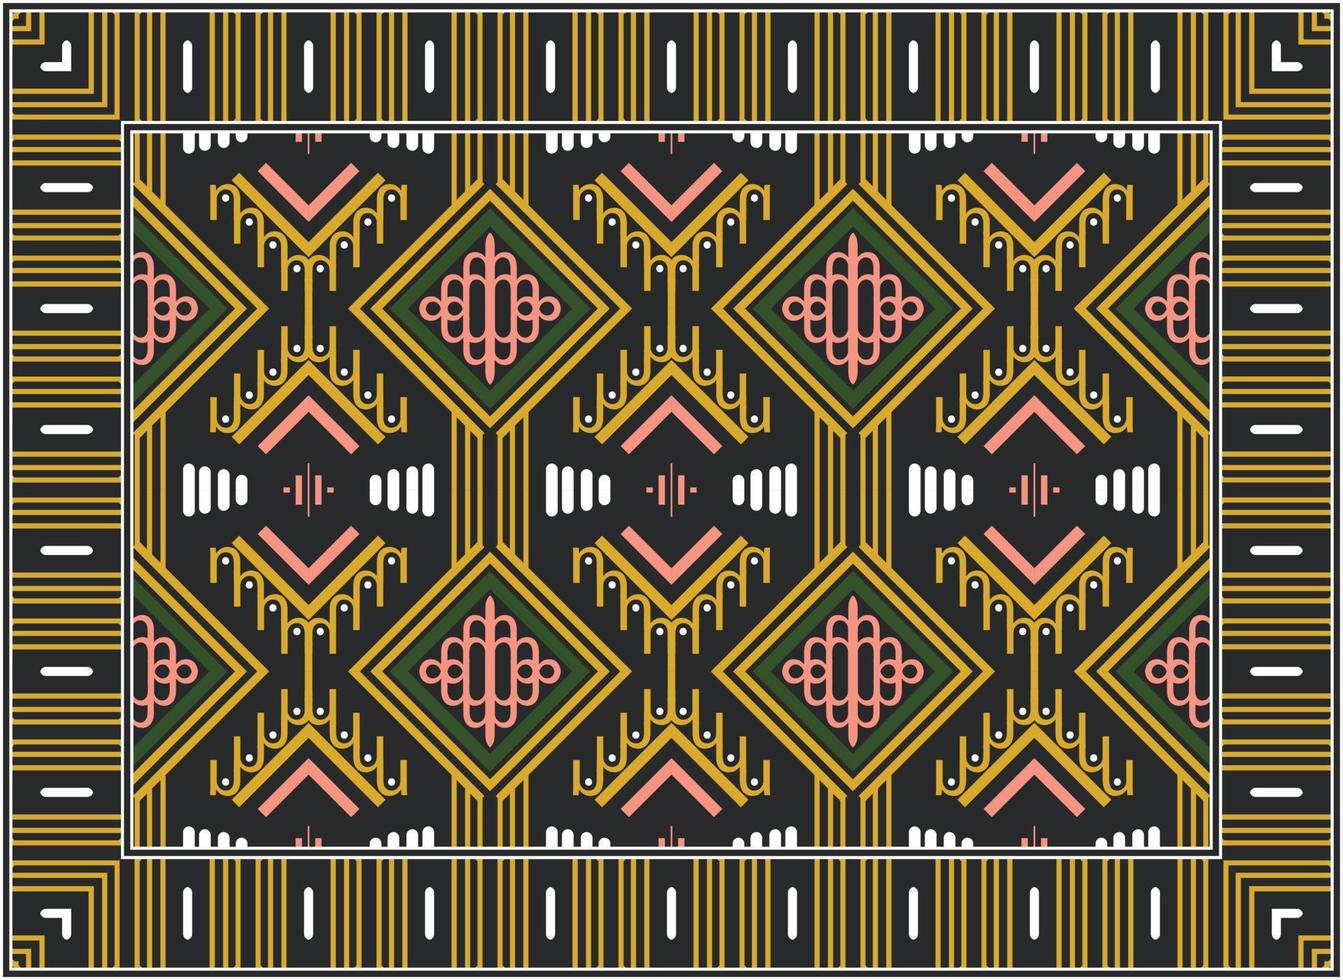 modern Perzisch tapijt, motief etnisch naadloos patroon modern Perzisch tapijt, Afrikaanse etnisch aztec stijl ontwerp voor afdrukken kleding stof tapijten, handdoeken, zakdoeken, sjaals tapijt, vector